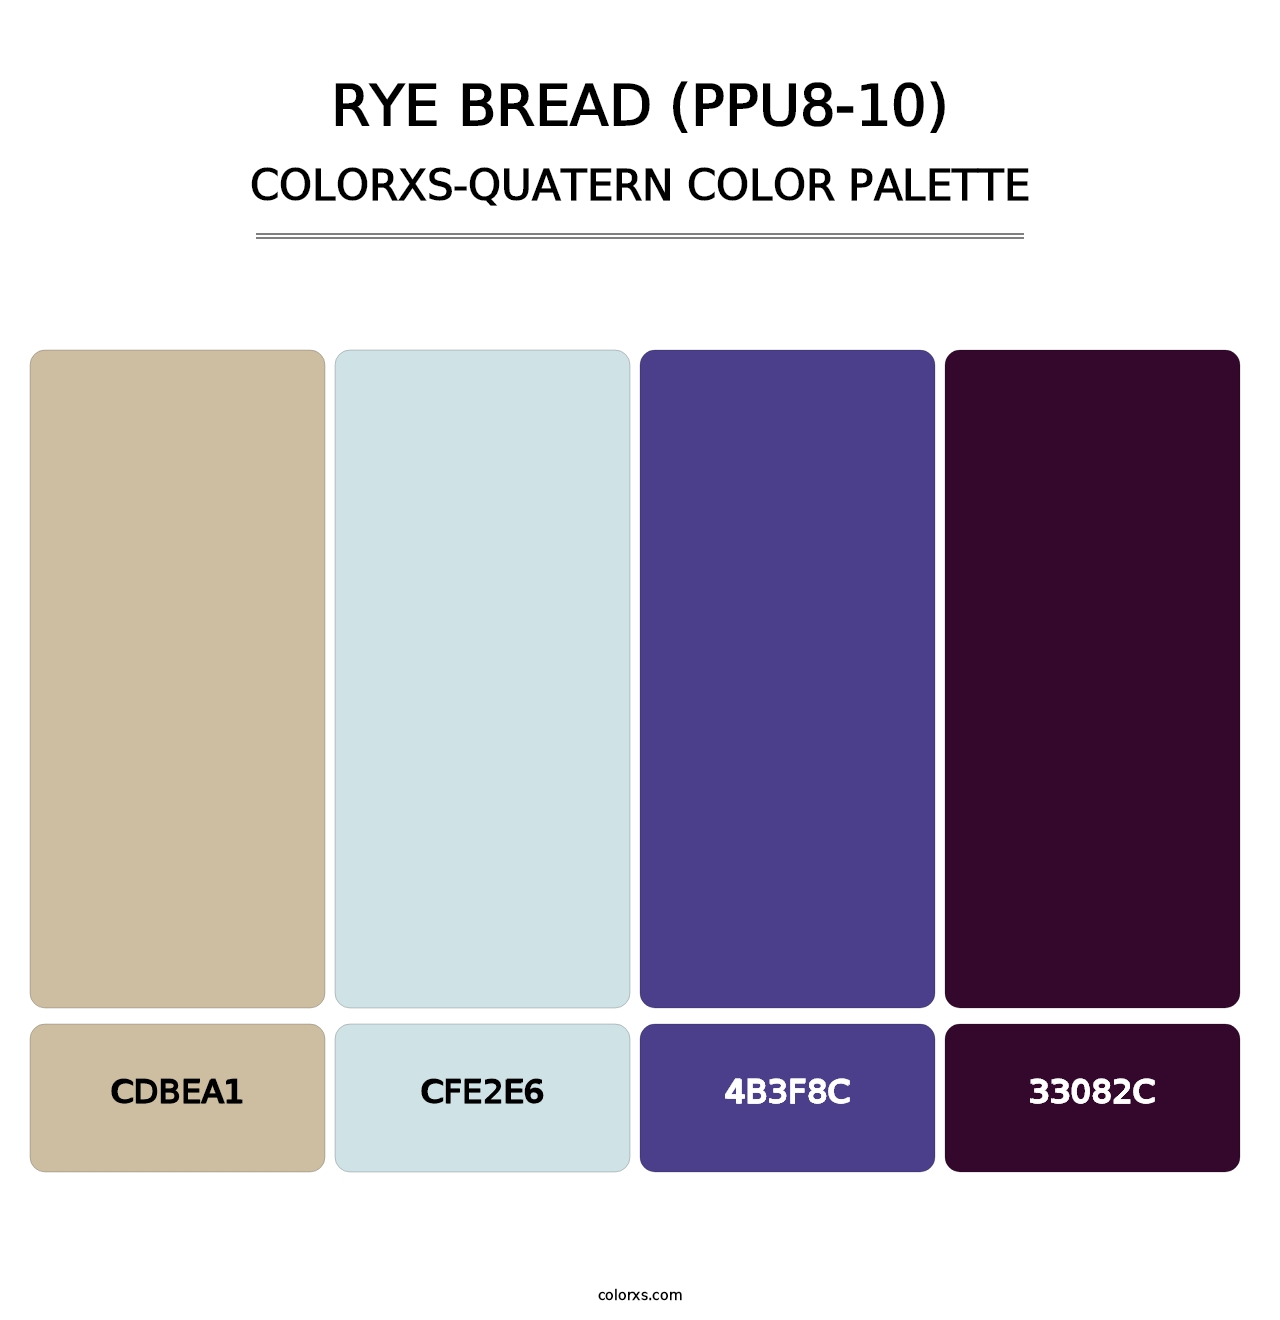 Rye Bread (PPU8-10) - Colorxs Quatern Palette